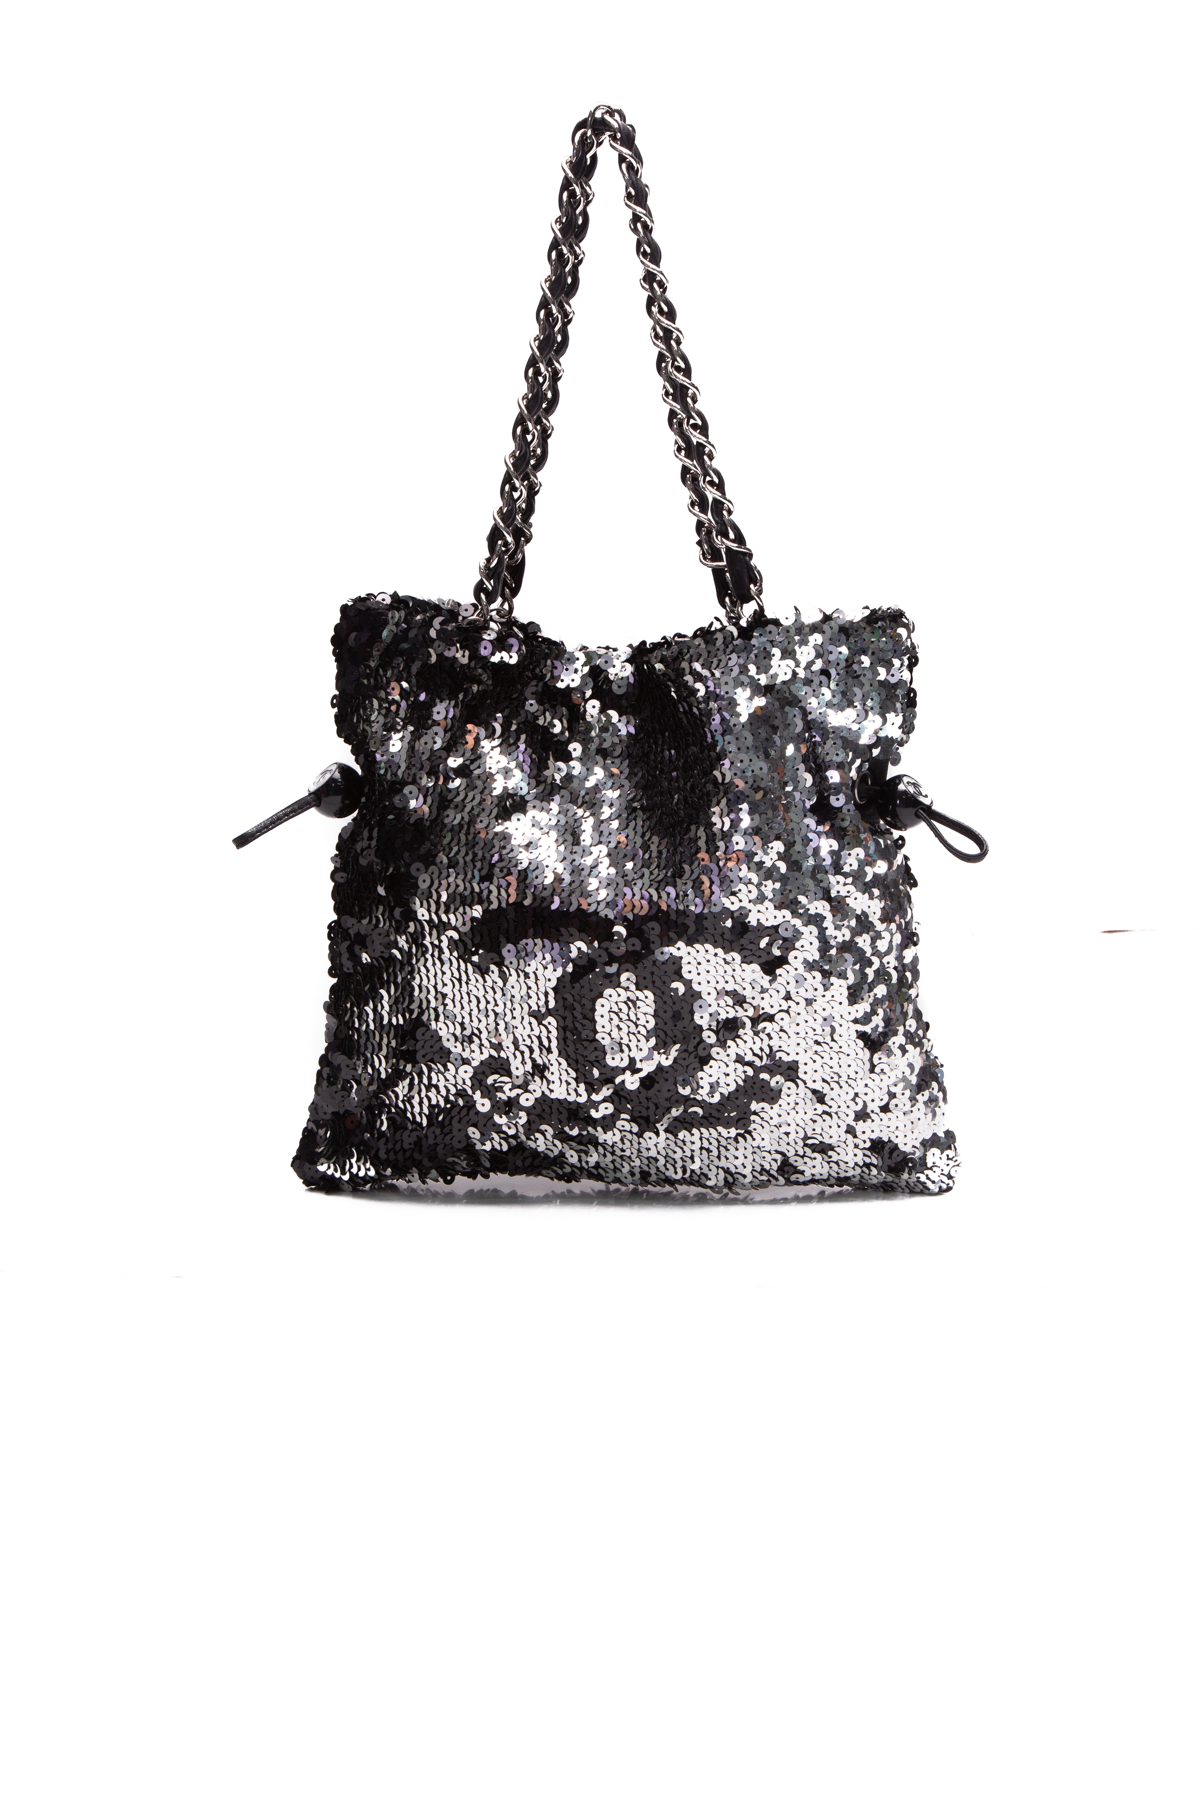 Chanel Medium 19 Sequin Flap Bag